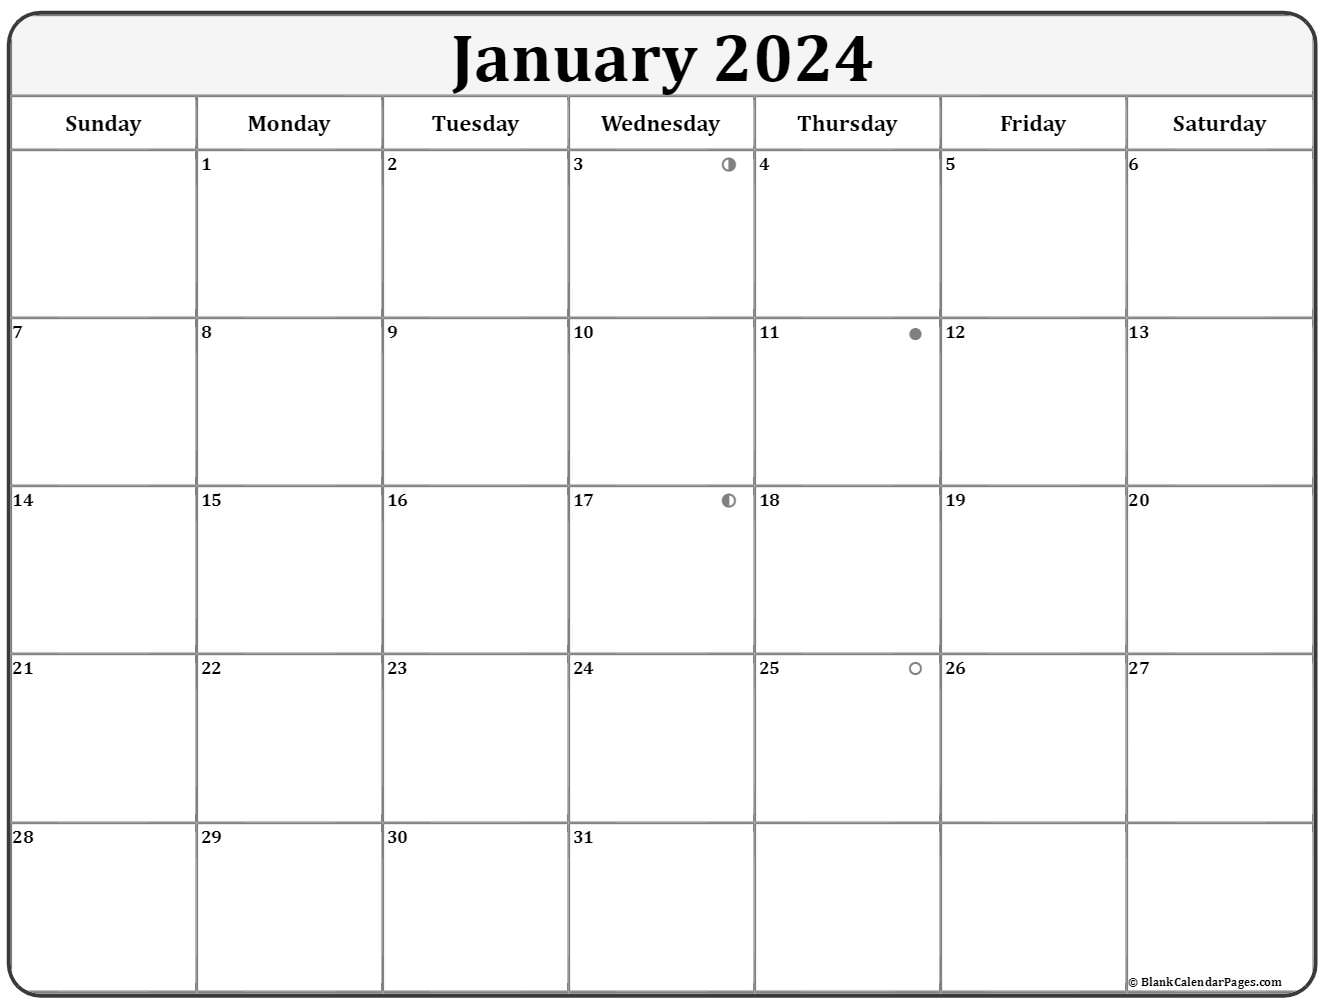 January 2020 Lunar Calendar | Moon Phase Calendar1767 x 1333